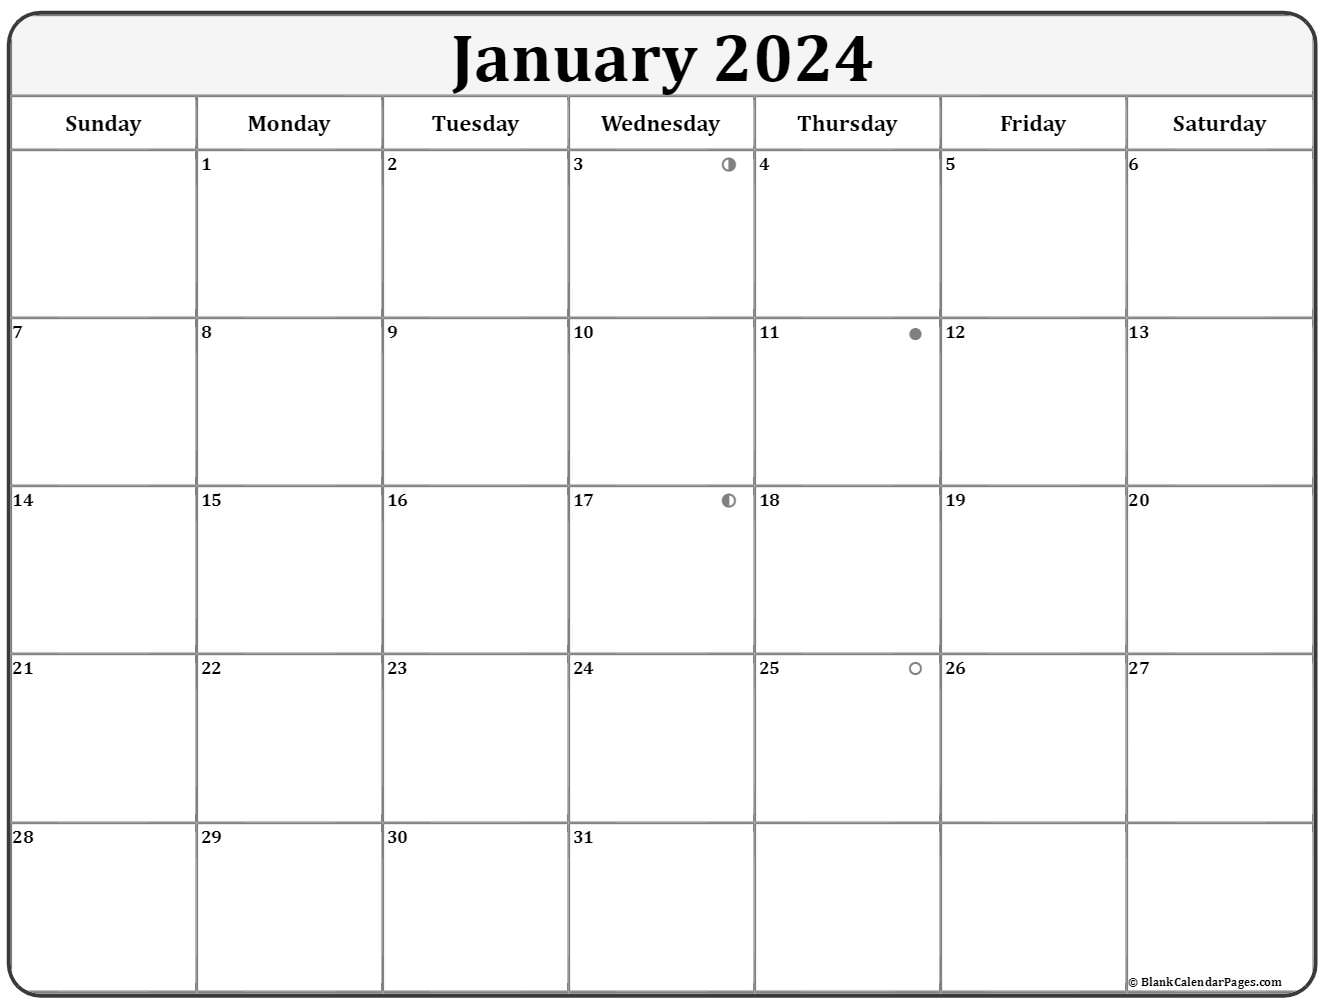 January 2020 Lunar Calendar | Moon Phase Calendar1767 x 1333